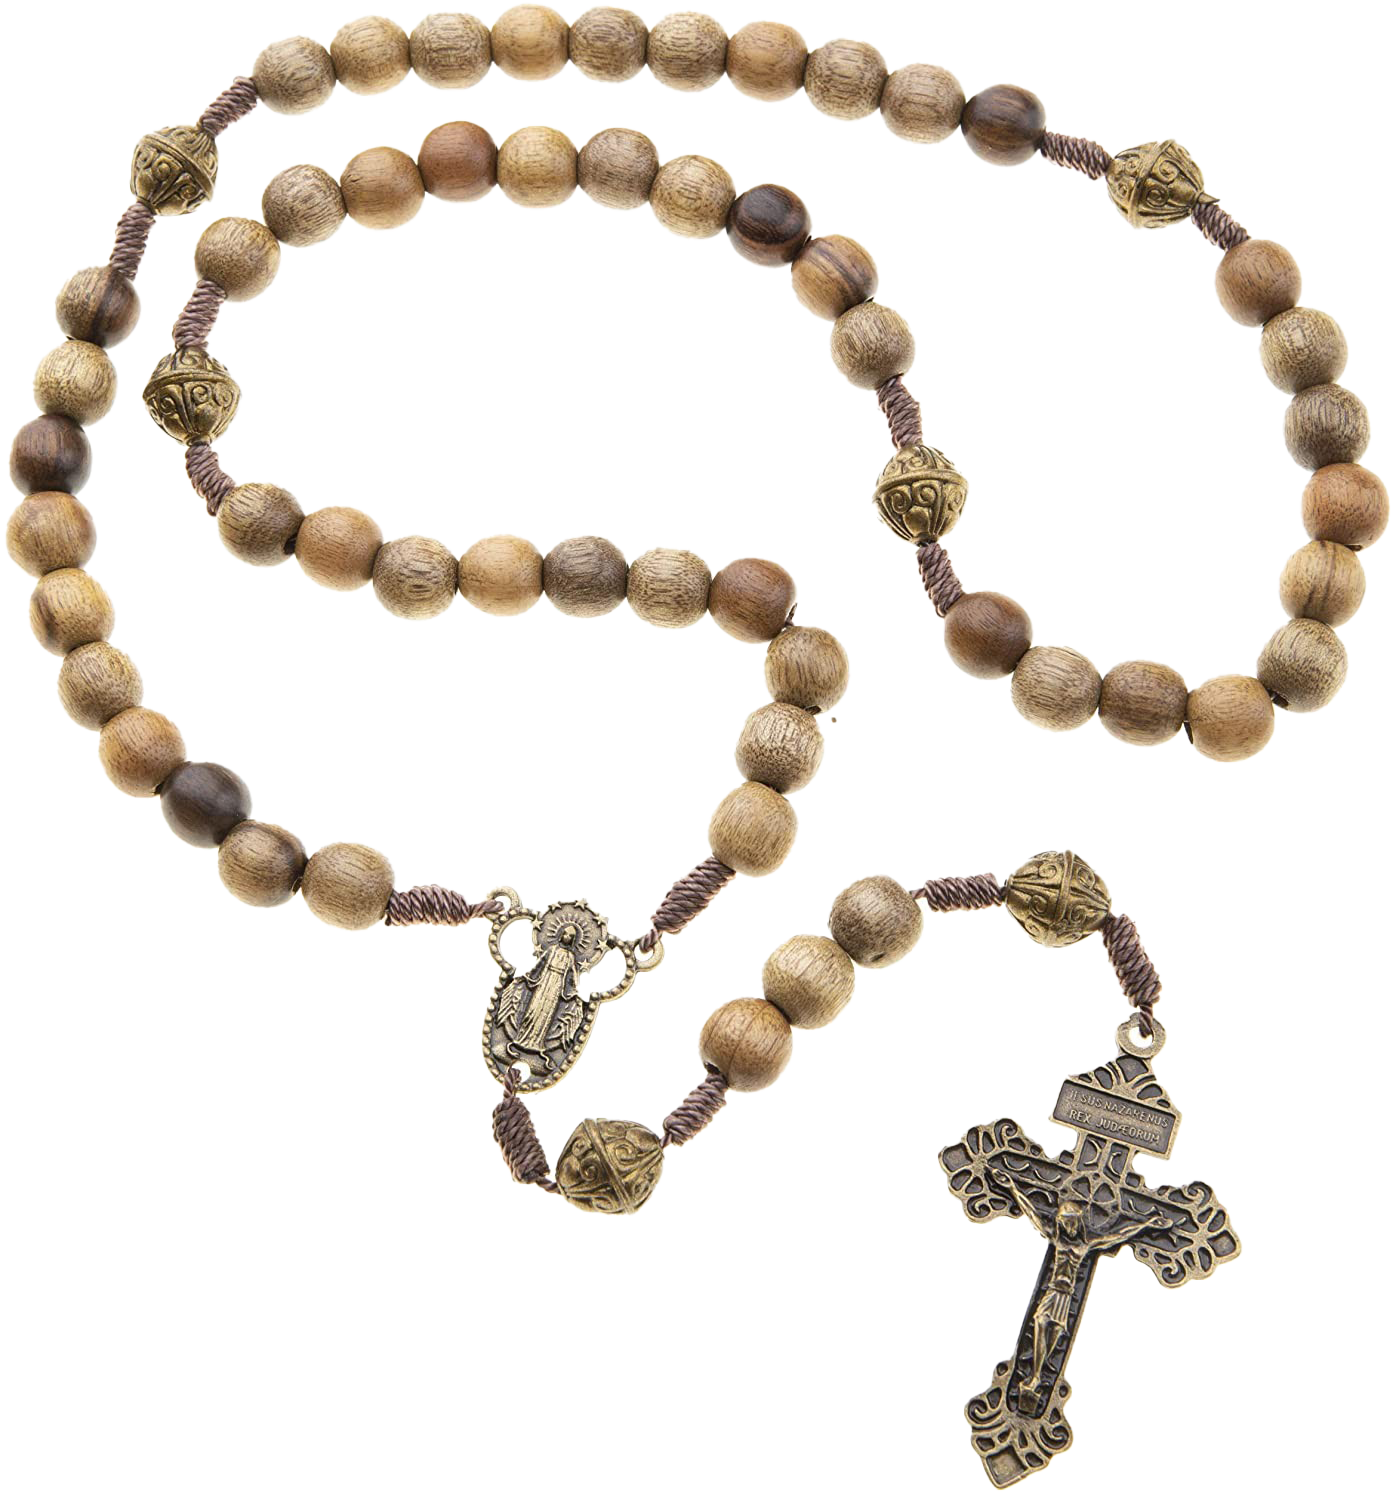 Rosary Beads PNG Imagen de alta calidad